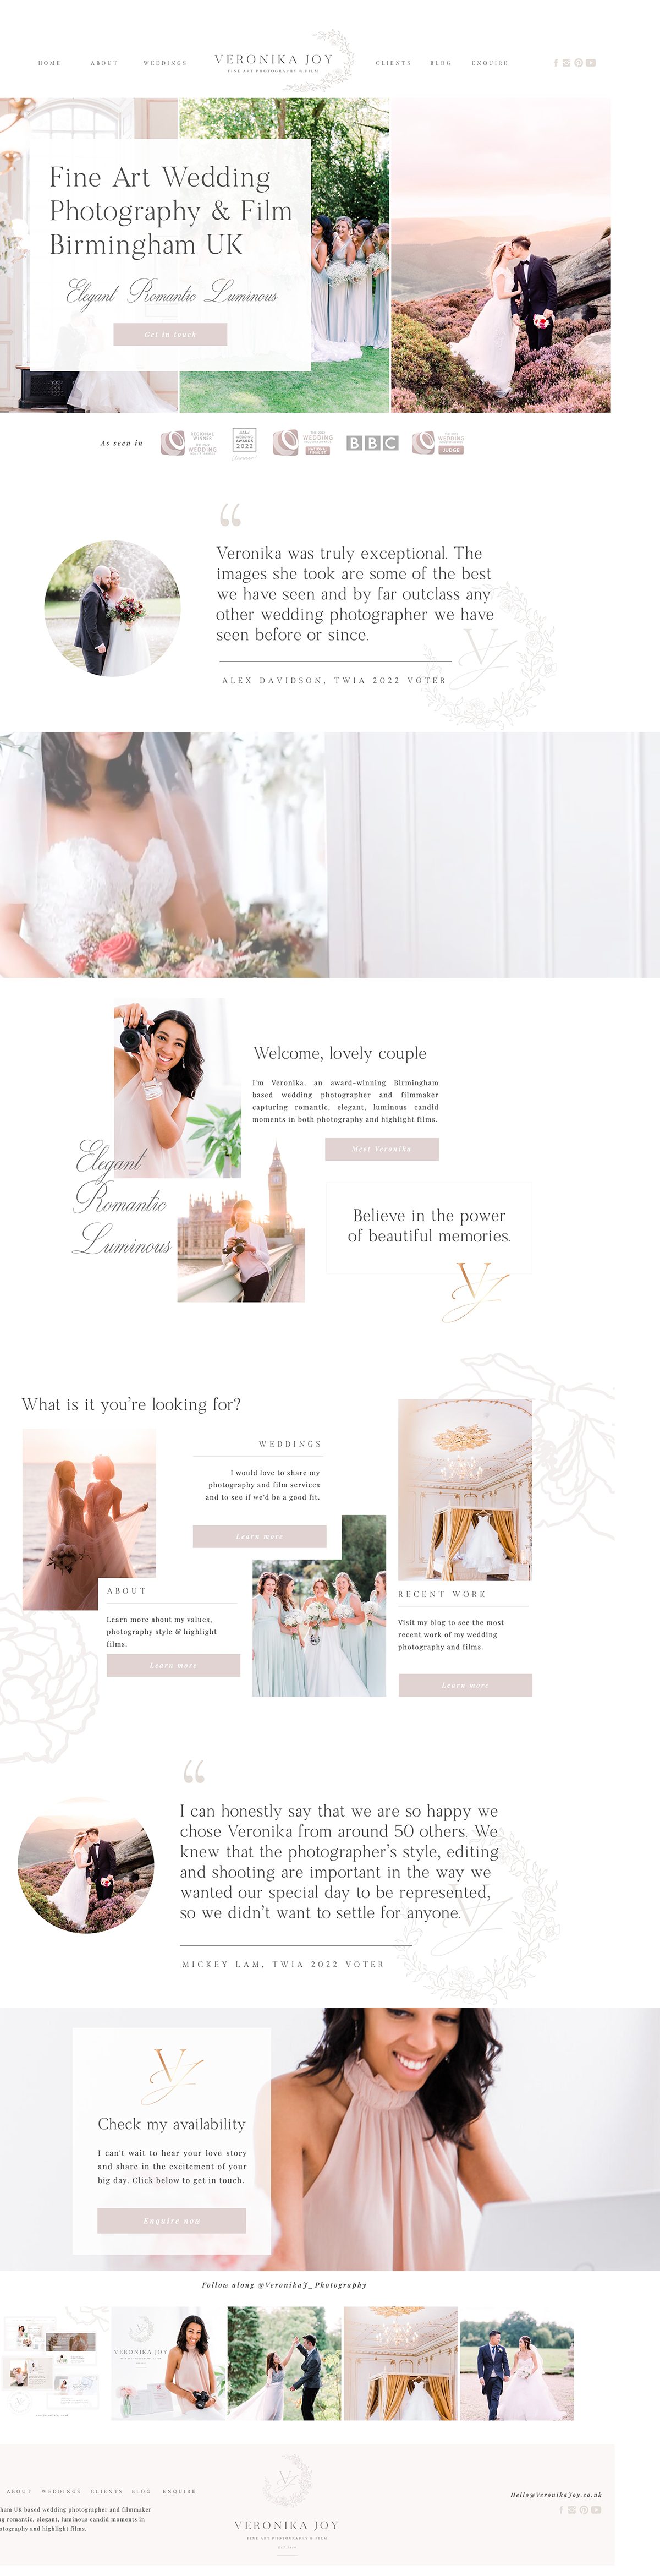 showit website / showit designer / branding for wedding businesses and creatives